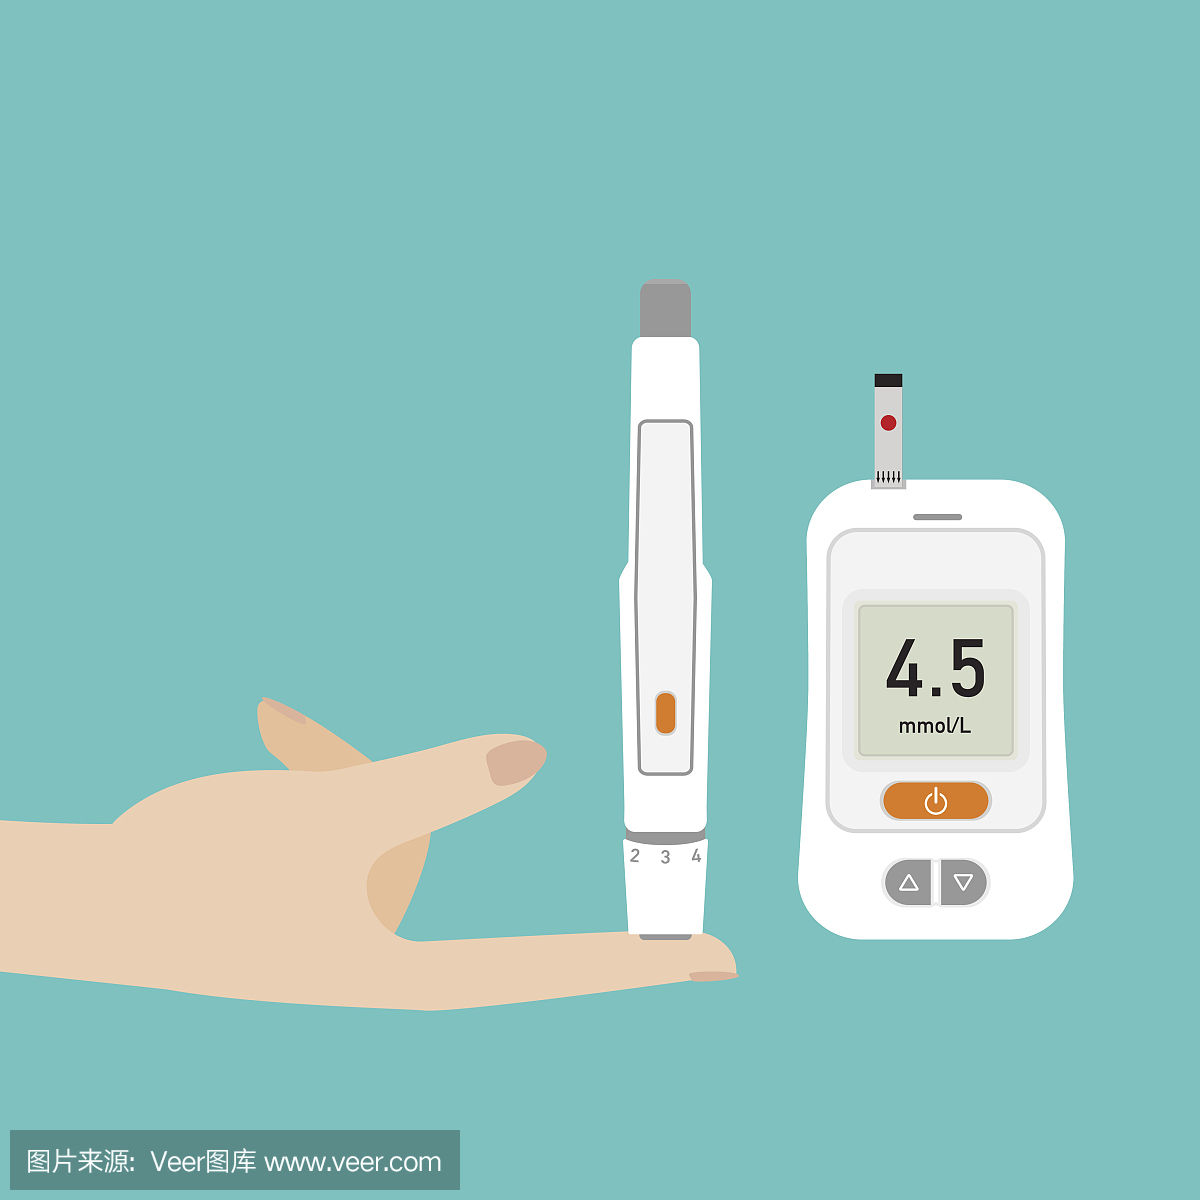 使用自动柳叶刀穿刺手指,检查血糖仪上的血糖